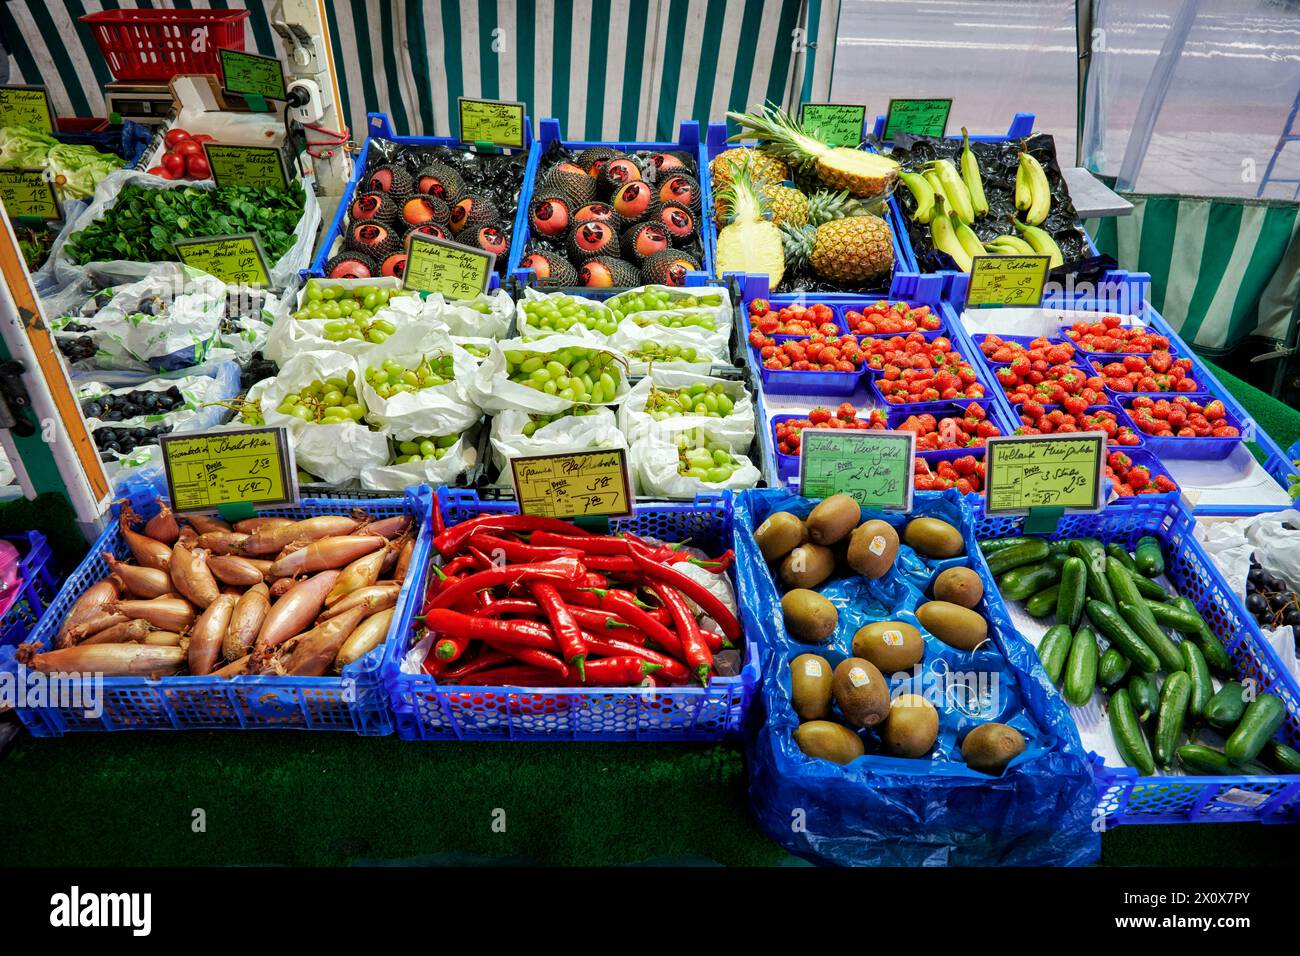 Reichhaltige Obst- und Gemüseauswahl an einem Marktstand. Stock Photo